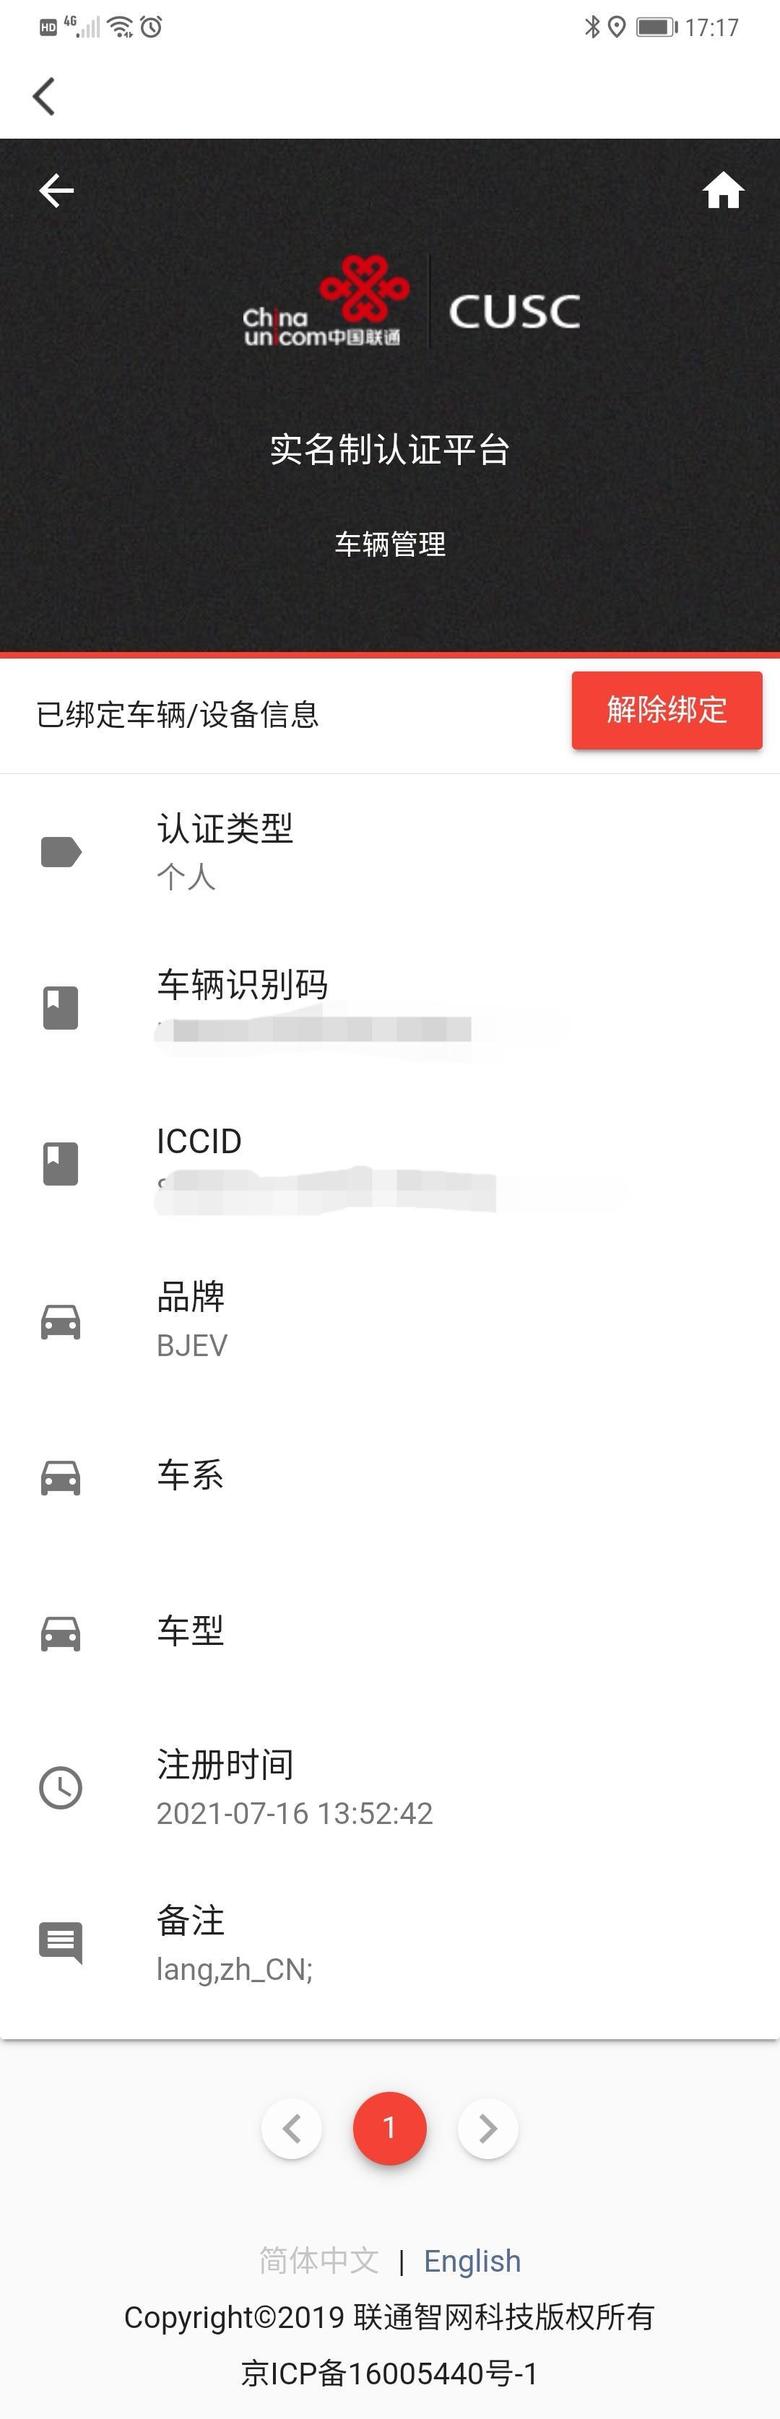 北京ex3请问车机的数据流量功能到底怎么开通？7/16日做的绑定和实名认证，到21日还不能用，手机共享热点给车机，车机能正常上网，但是北汽号称的自带每月2G流量就不行。智慧管家app里客服让我解绑再绑定还是不行，app里看到流量是有的，就是车机好像连不上机站，换了很多地方了，肯定不是网络信号的问题